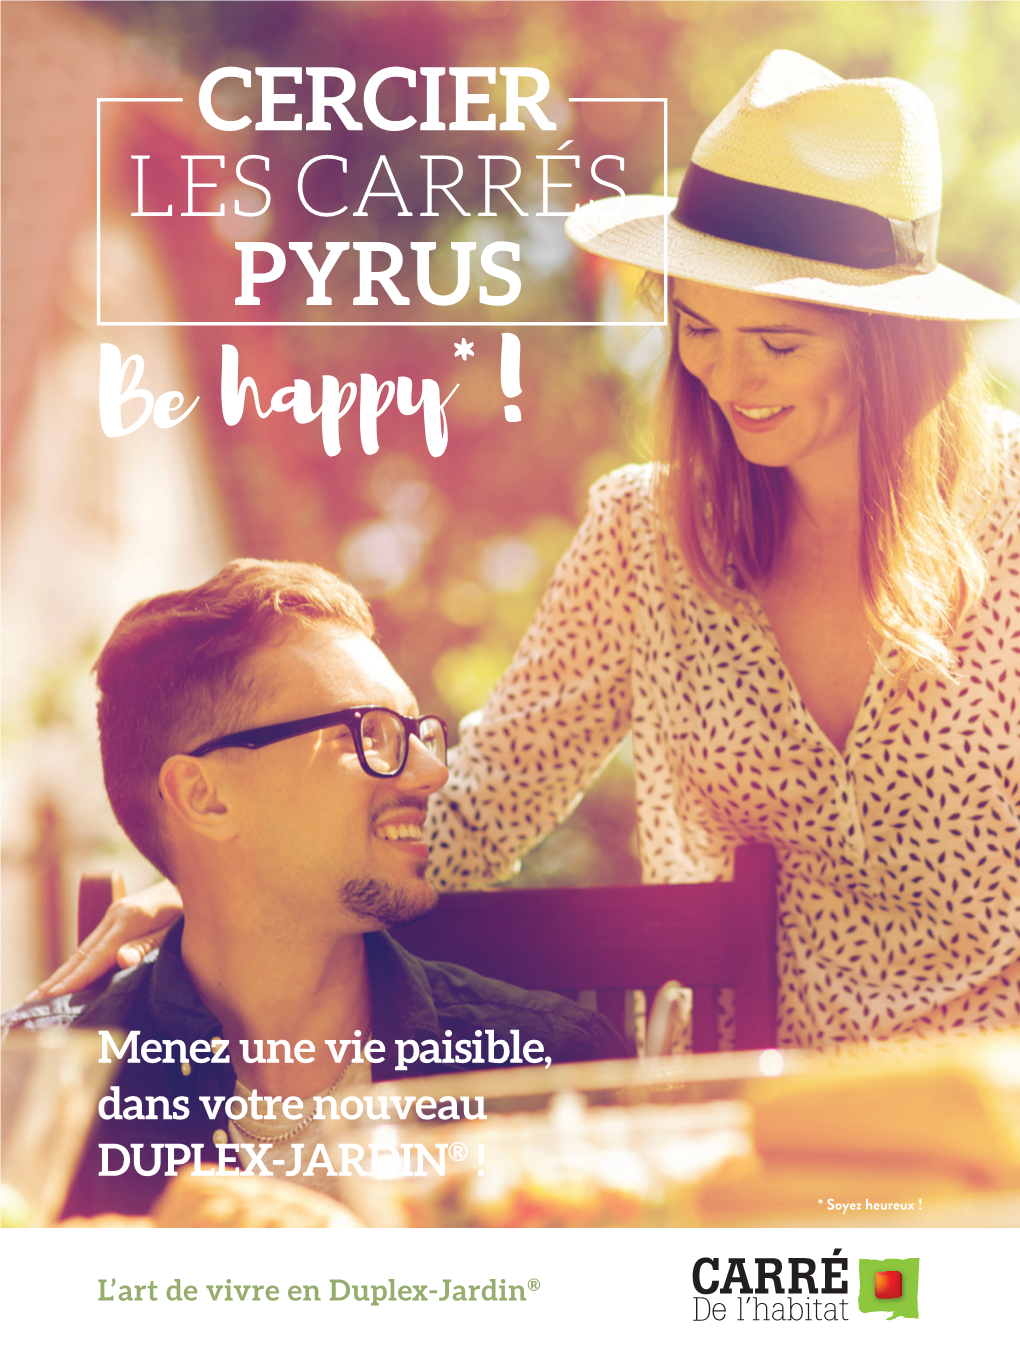 CERCIER LES CARRÉS PYRUS Be Happy*!